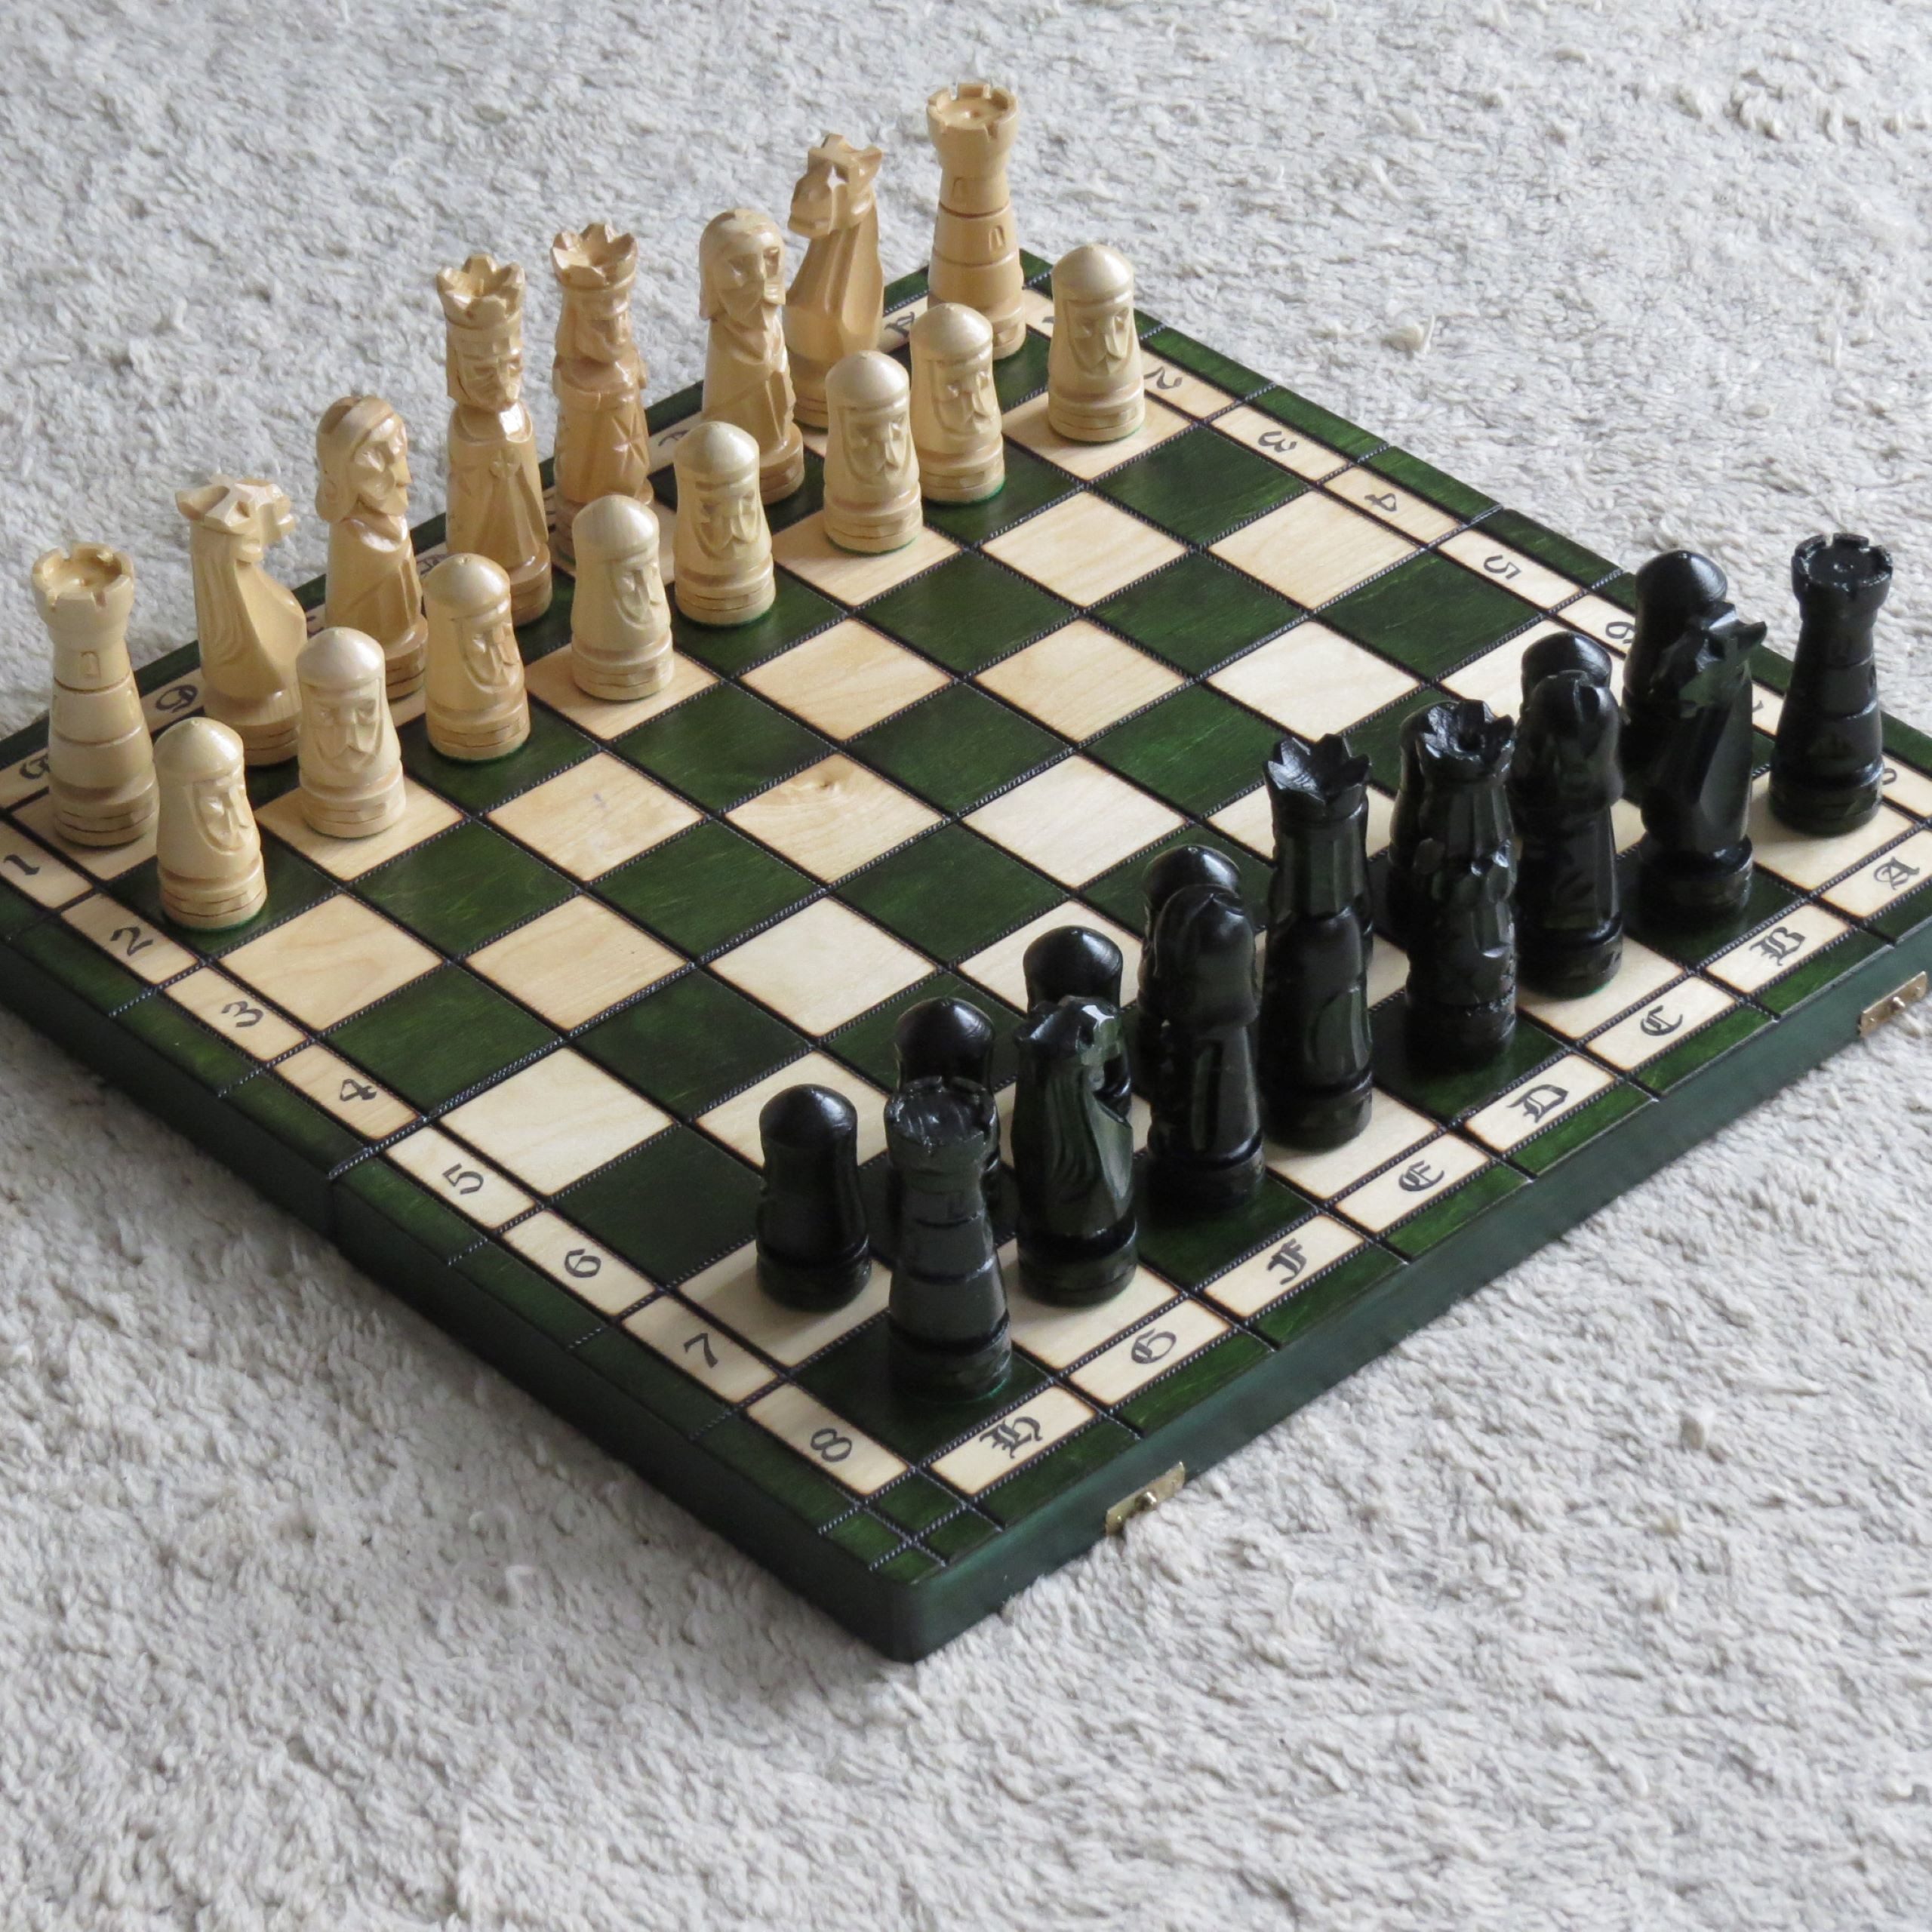 Holzprodukte Spiel, Schach Geschnitzt 50 x 50 cm Schachspiel Holz Geschnitzt NEU grün